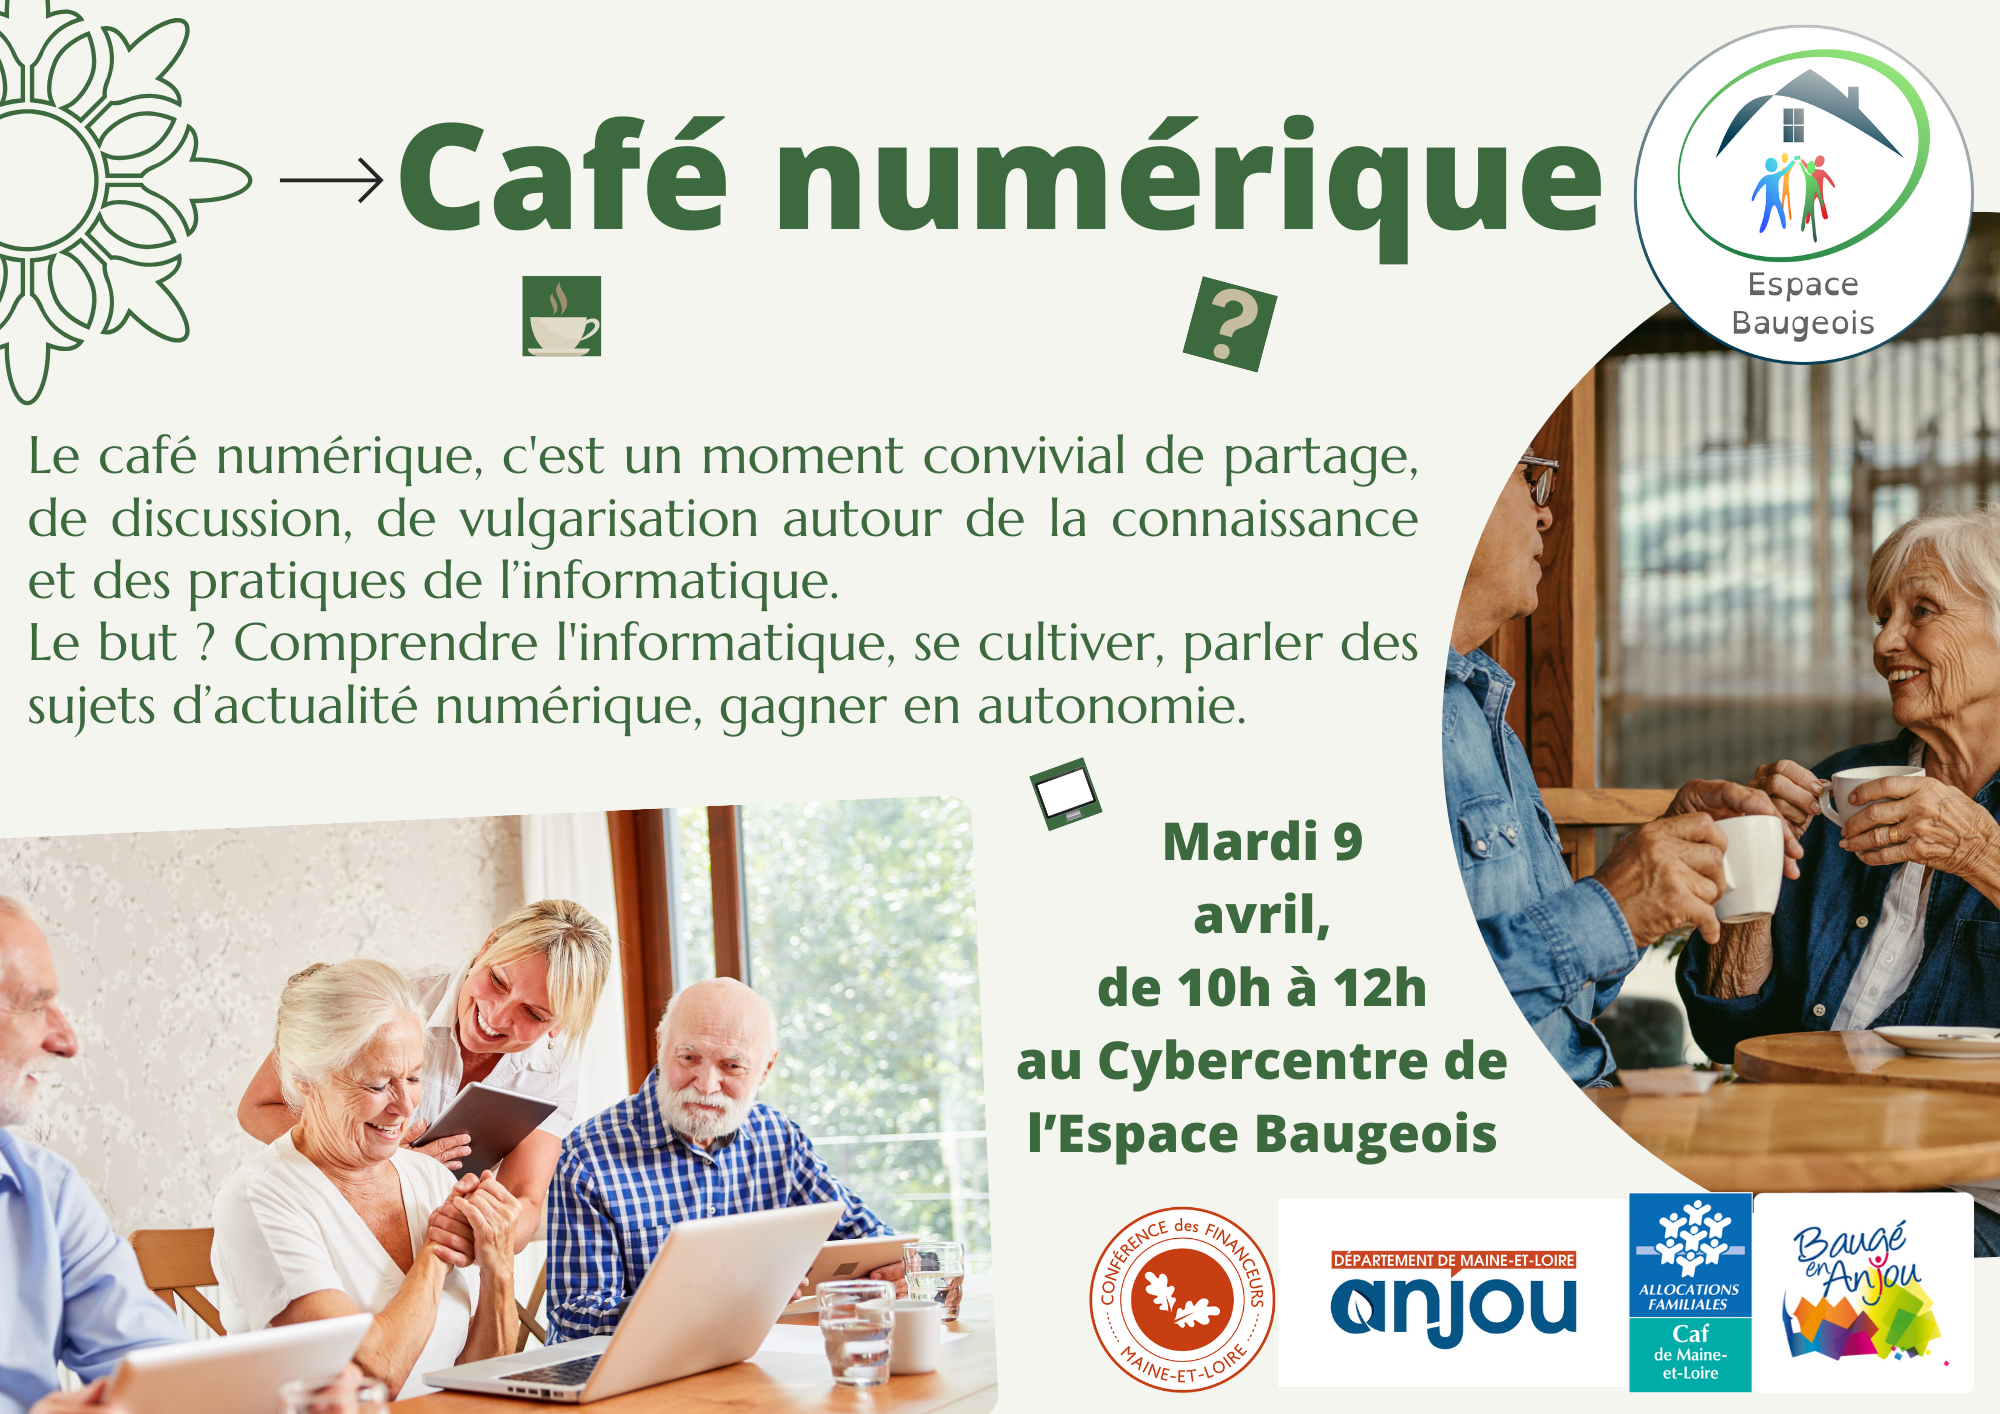 Prochain café numérique : mardi 9 avril, au Cybercentre de l'Association Espace Baugeois